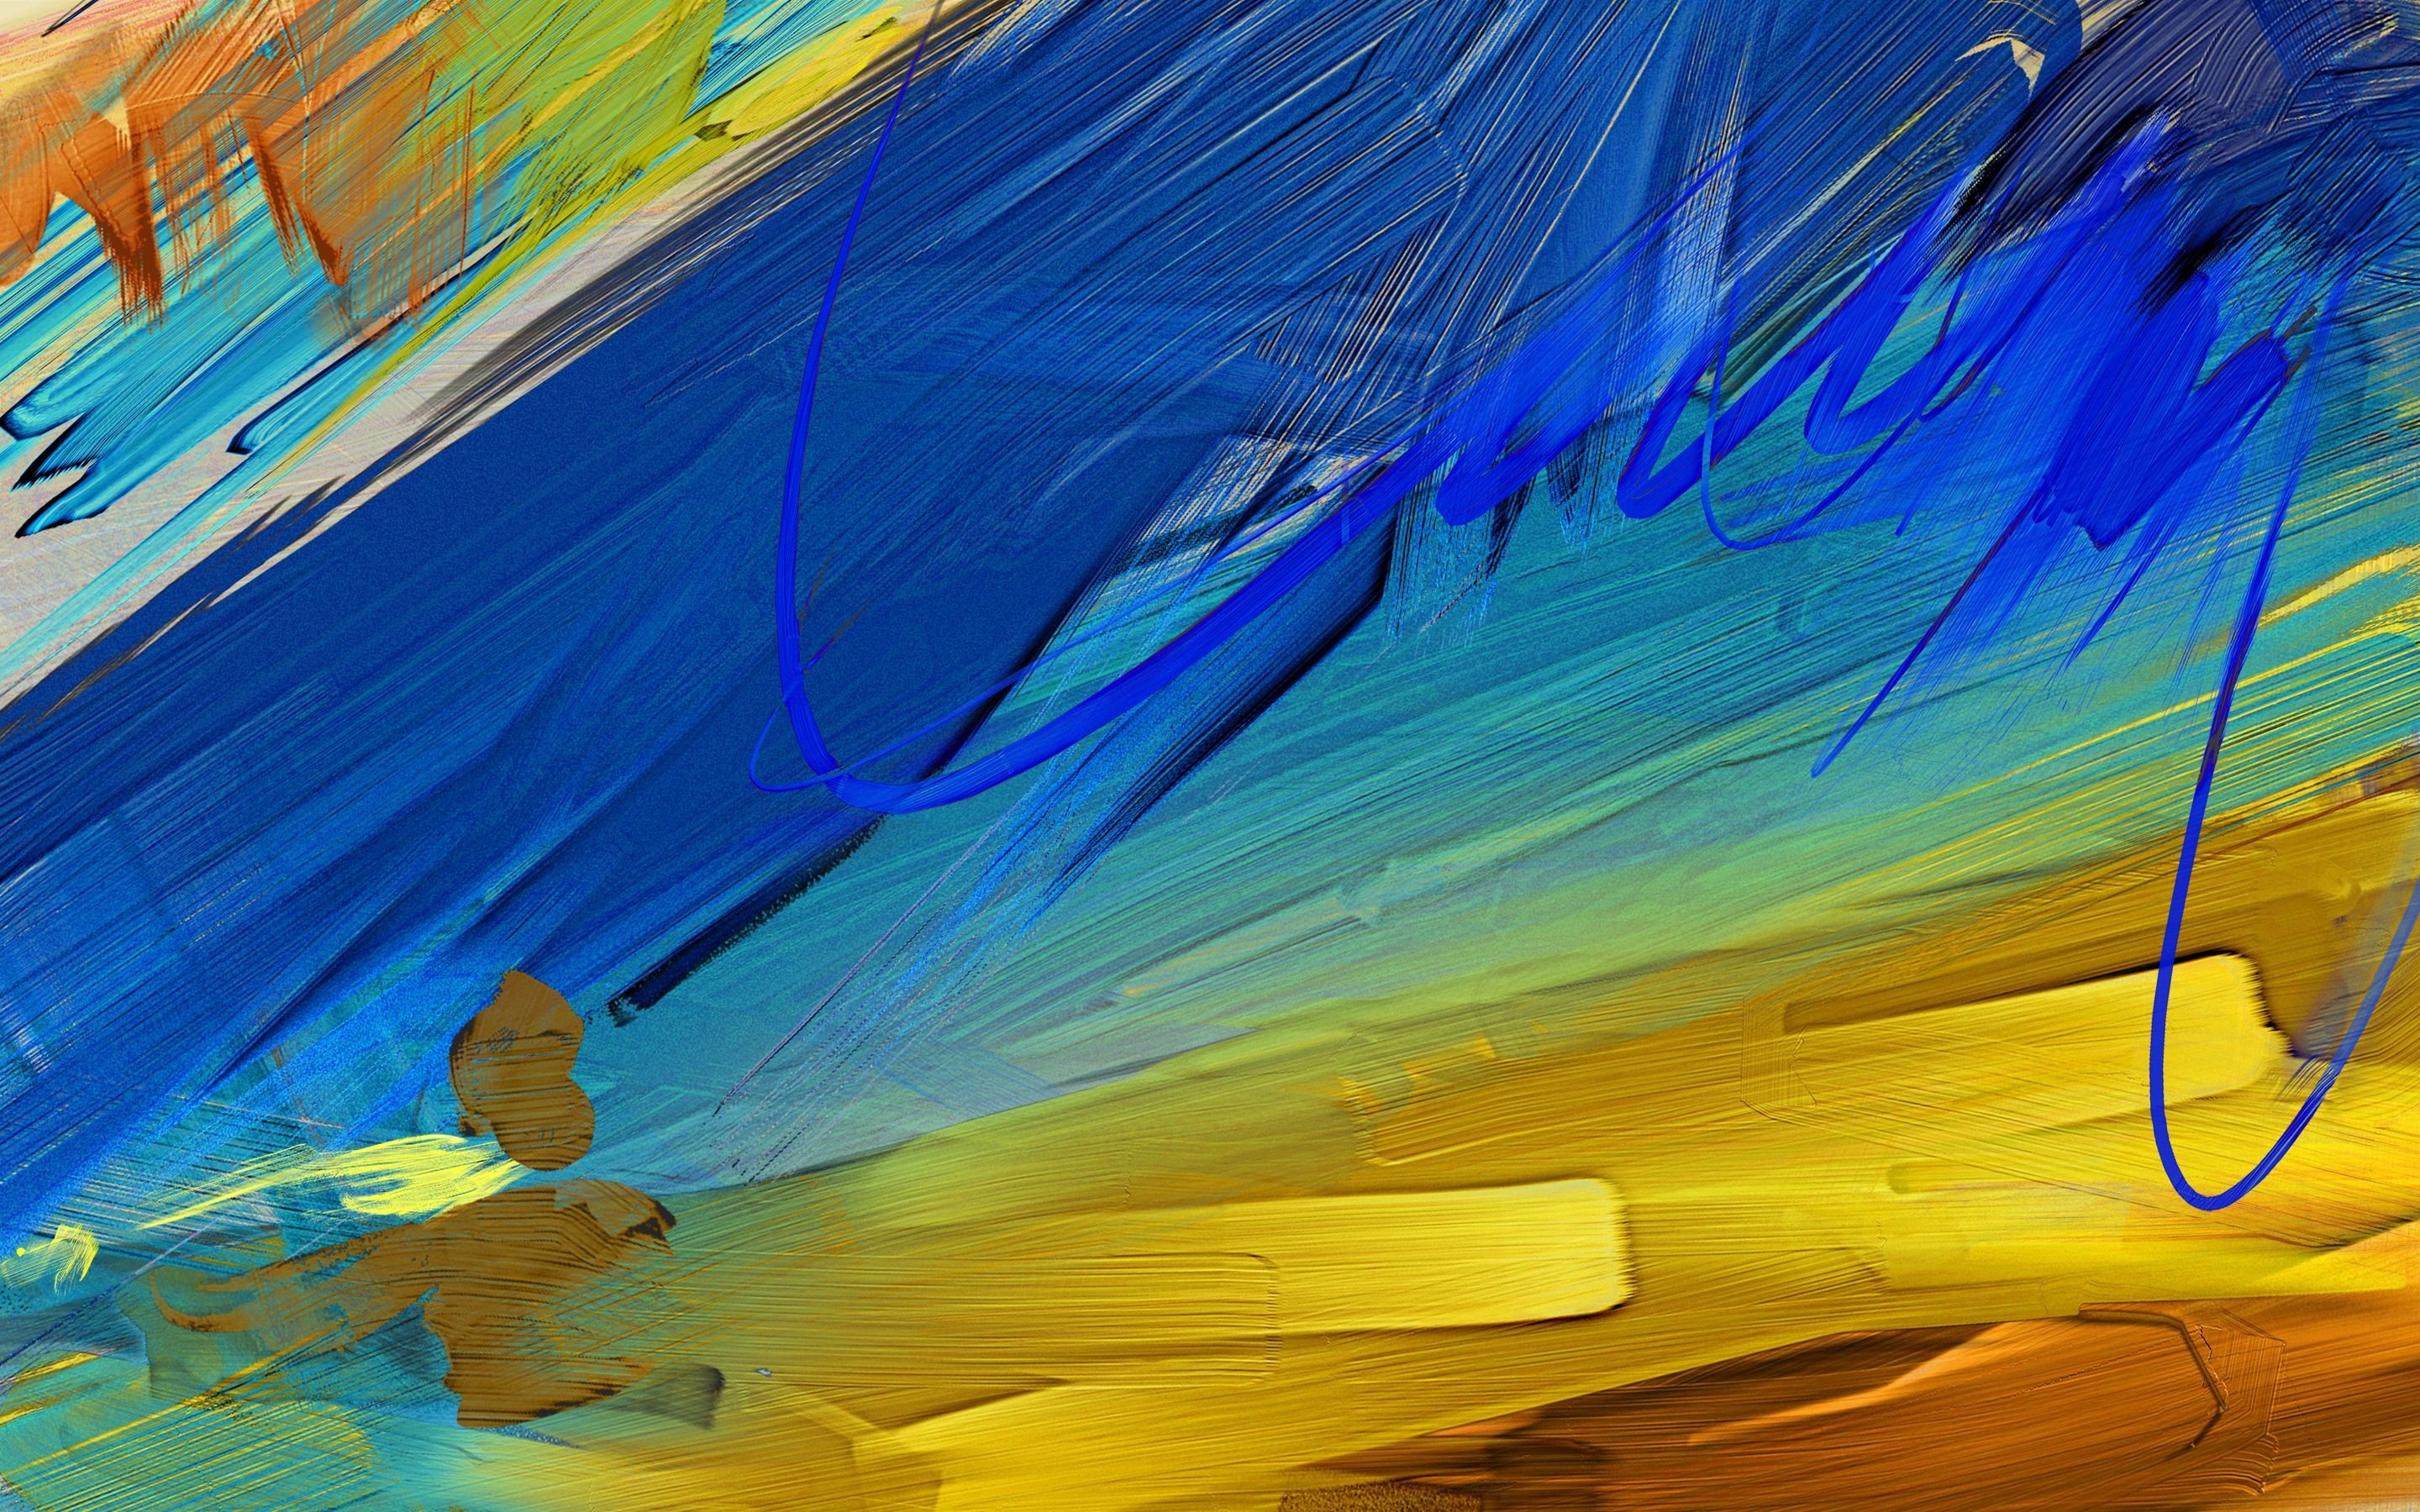 colors, strokes, textures, flowers, texture, paints, different, smears, oil 1080p